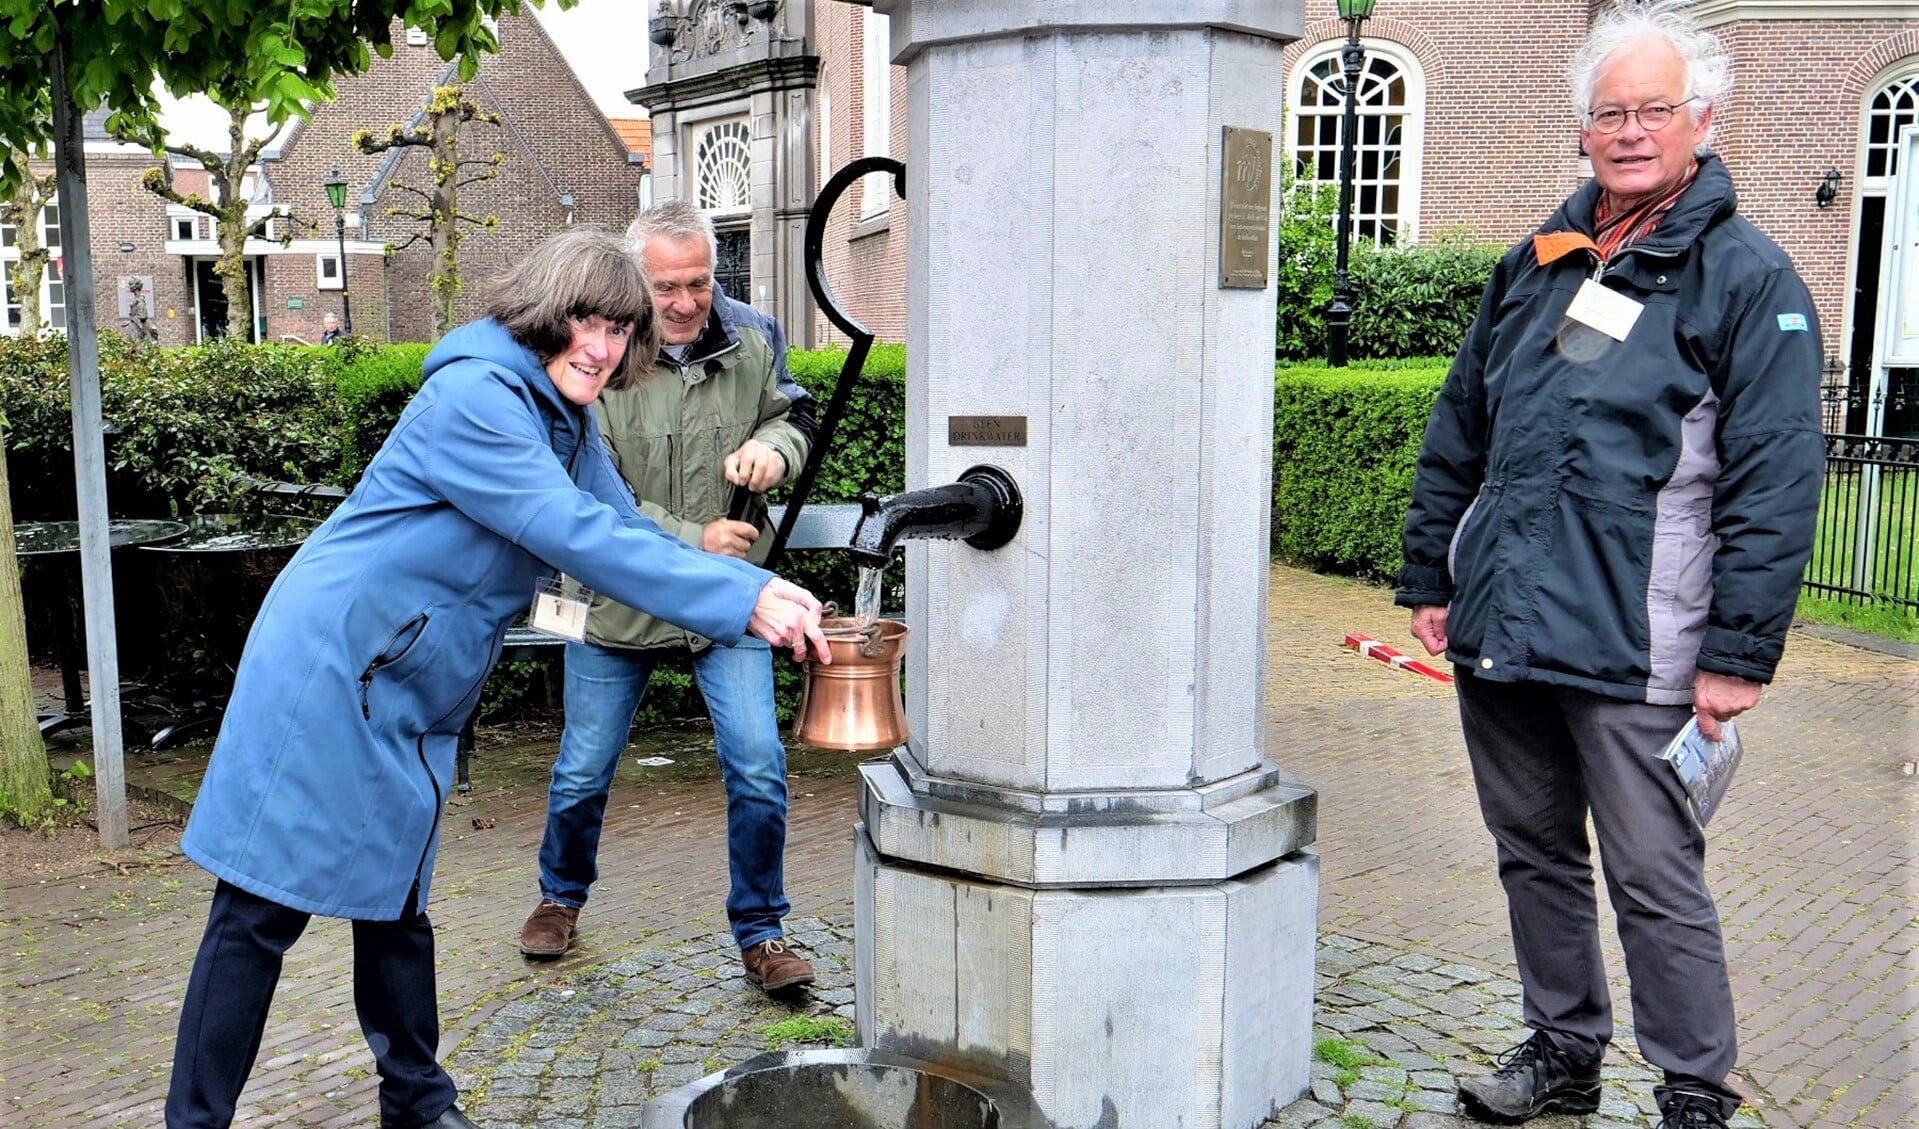 Bestuursleden van Mooi Voorburg stellen de dorpspomp in gebruik (foto: Ot Douwes).